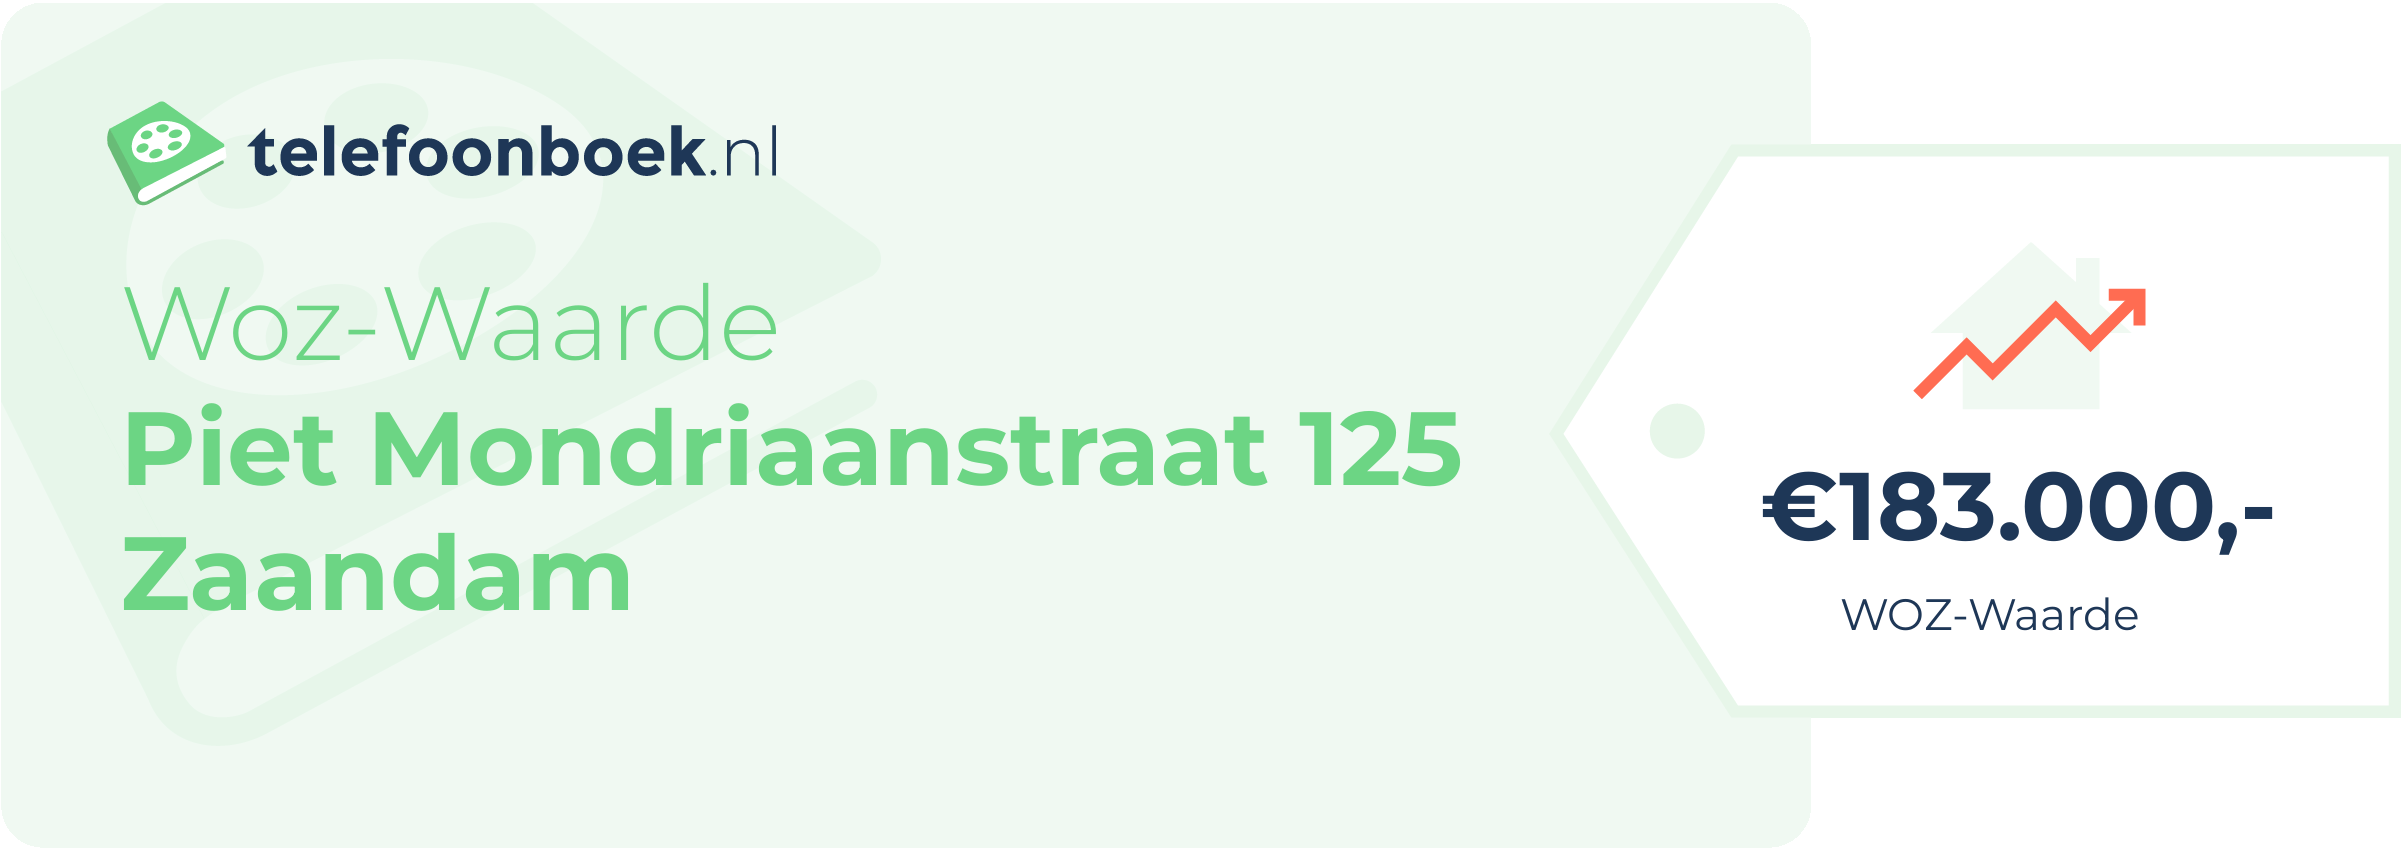 WOZ-waarde Piet Mondriaanstraat 125 Zaandam